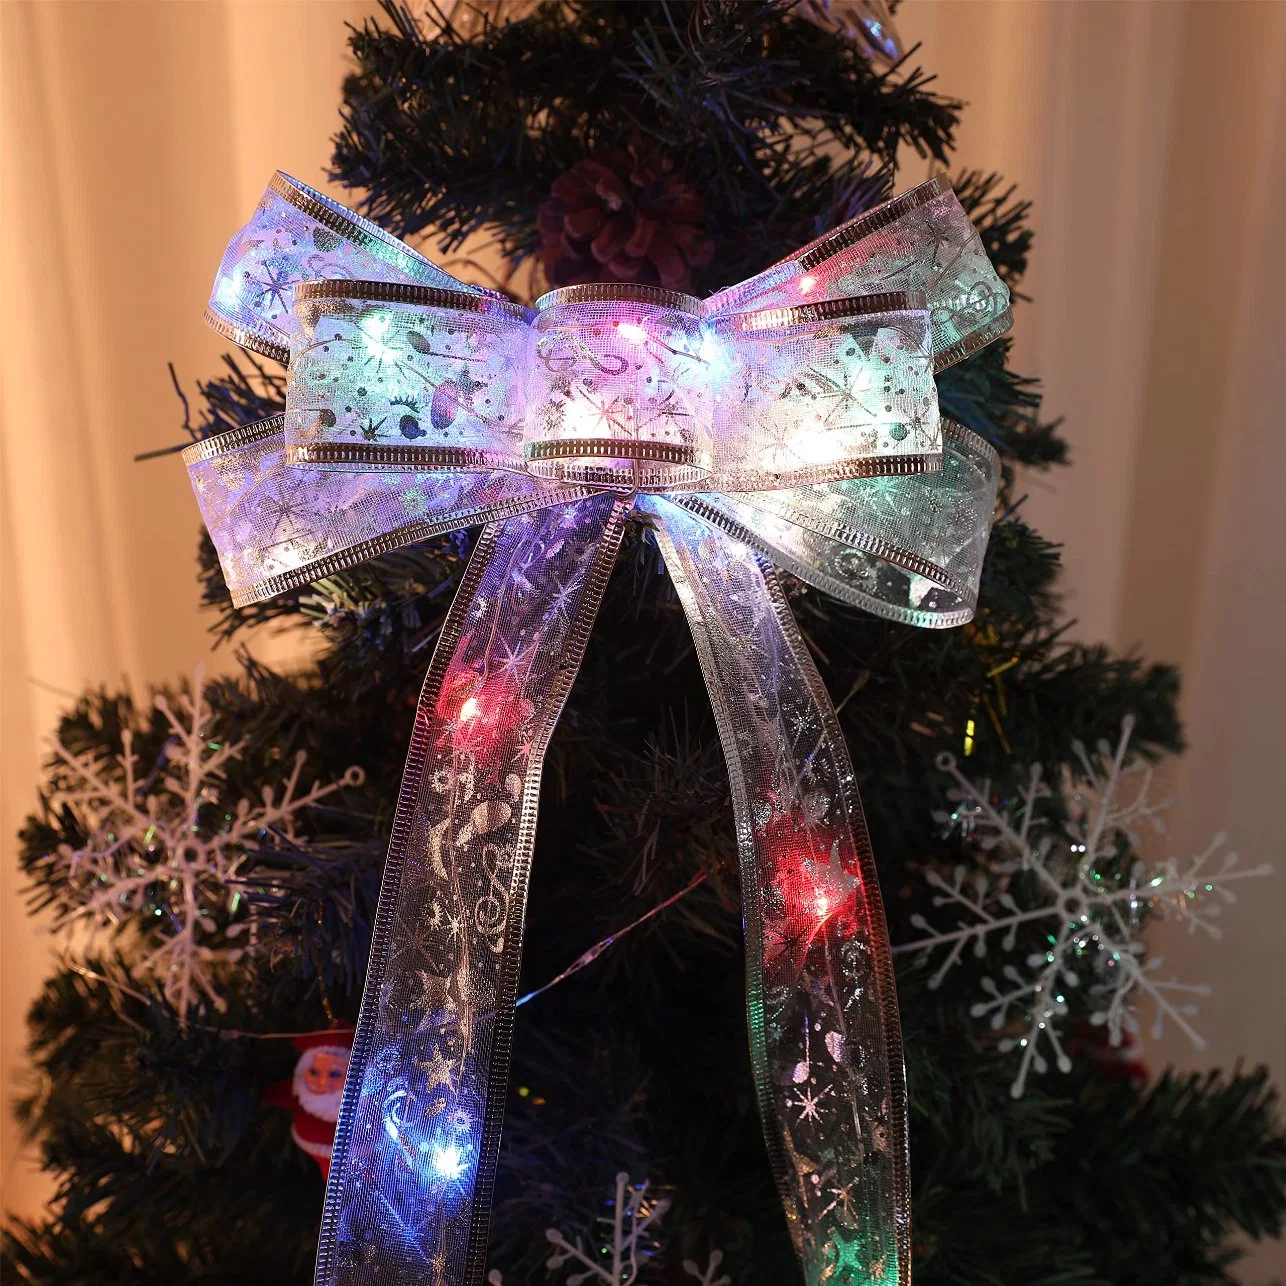 Guirlandes lumineuses en ruban LED en fil de cuivre pour sapin de Noël avec des nœuds féeriques.